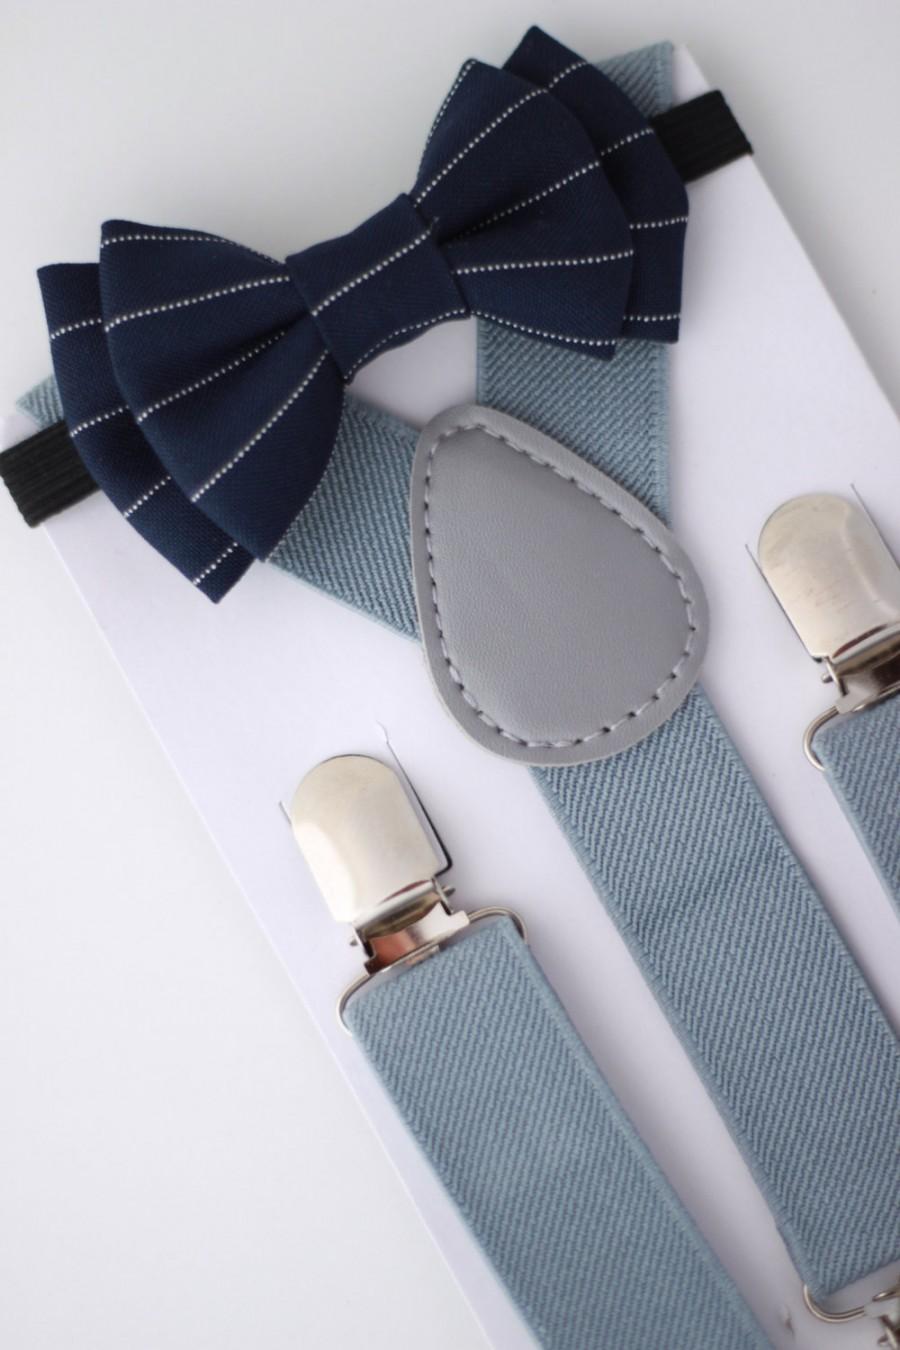 زفاف - SUSPENDER & BOWTIE SET.  Newborn - Adult sizes. Light grey Suspenders. Navy blue pinstripe bow tie.